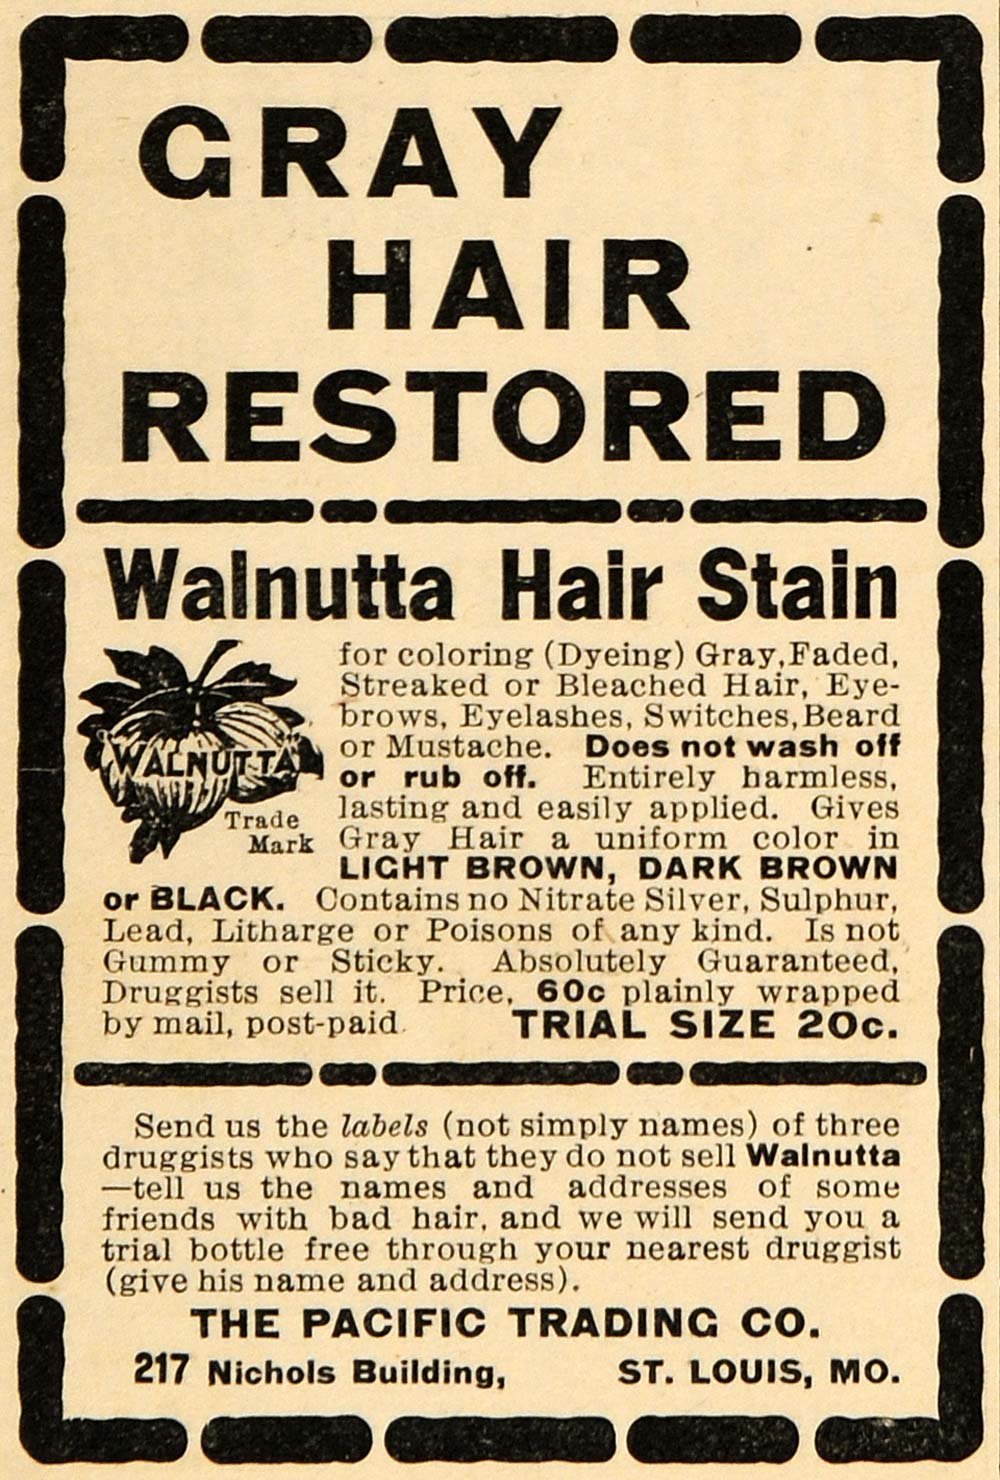 1905 Ad Pacific Trading Co Walnutta Hair Stain Hair Dye - ORIGINAL ARG1